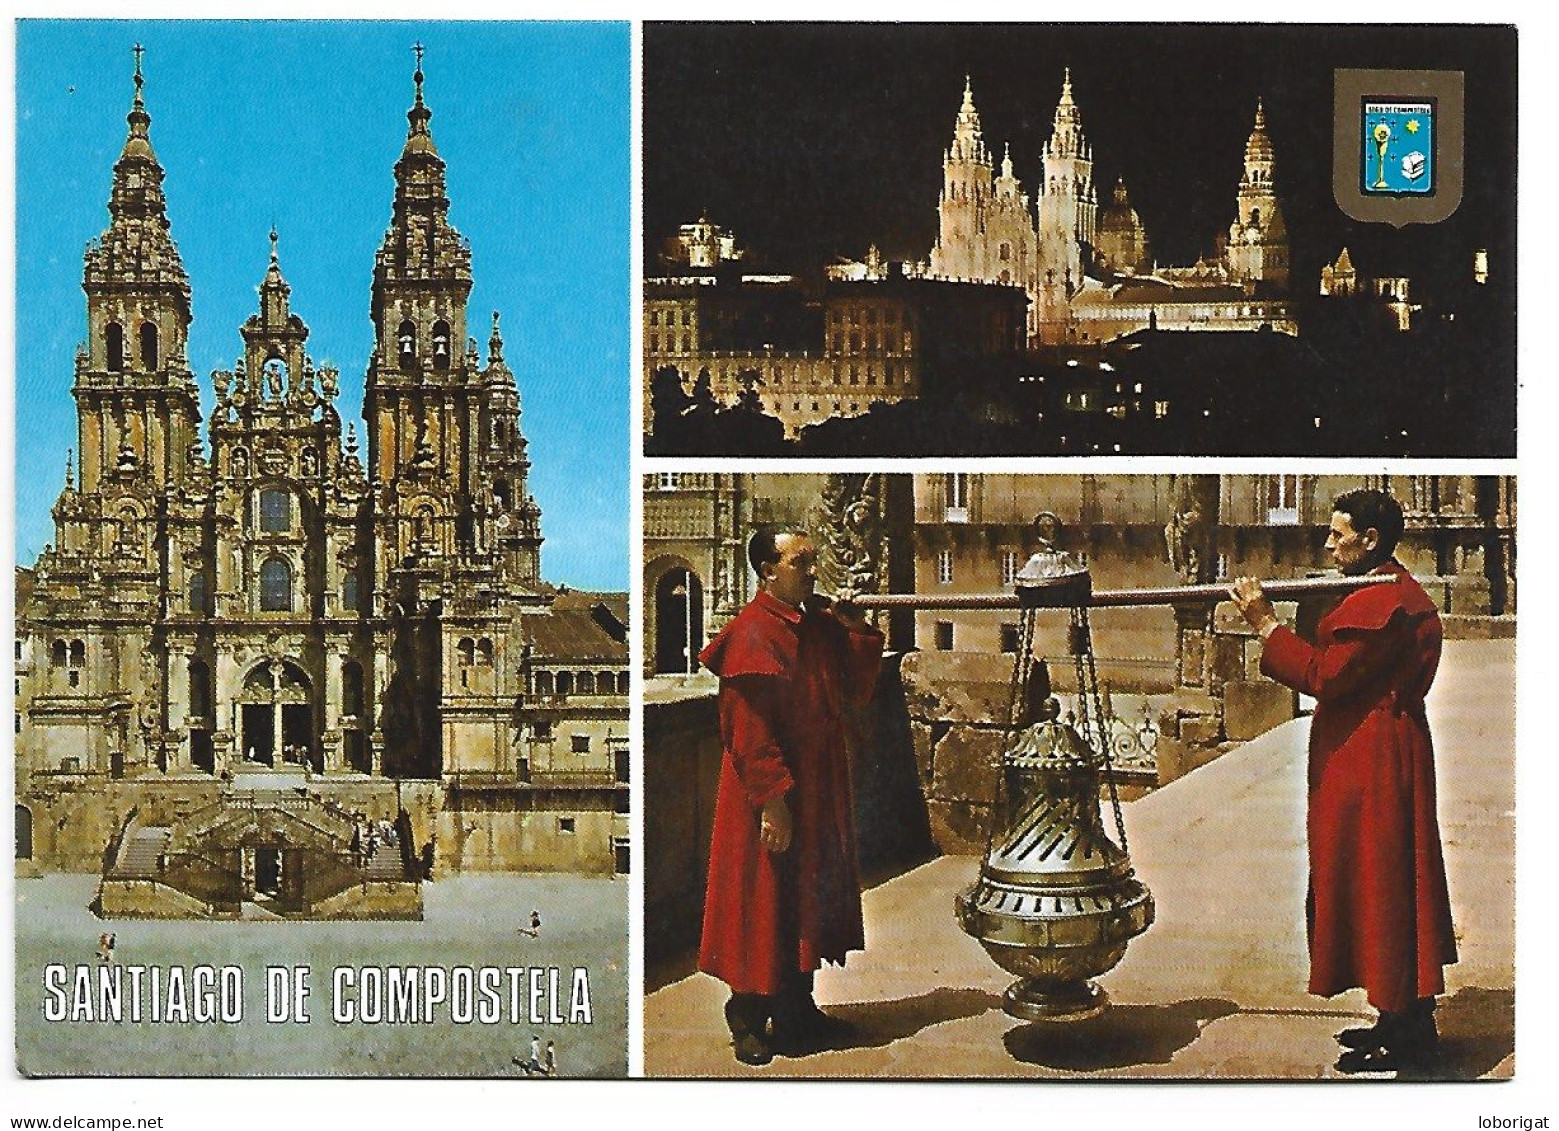 DIVERSOS ASPECTOS / DIFFERENT ASPECTS.- SANTIAGO DE COMPOSTELA - GALICIA - ( ESPAÑA). - Santiago De Compostela